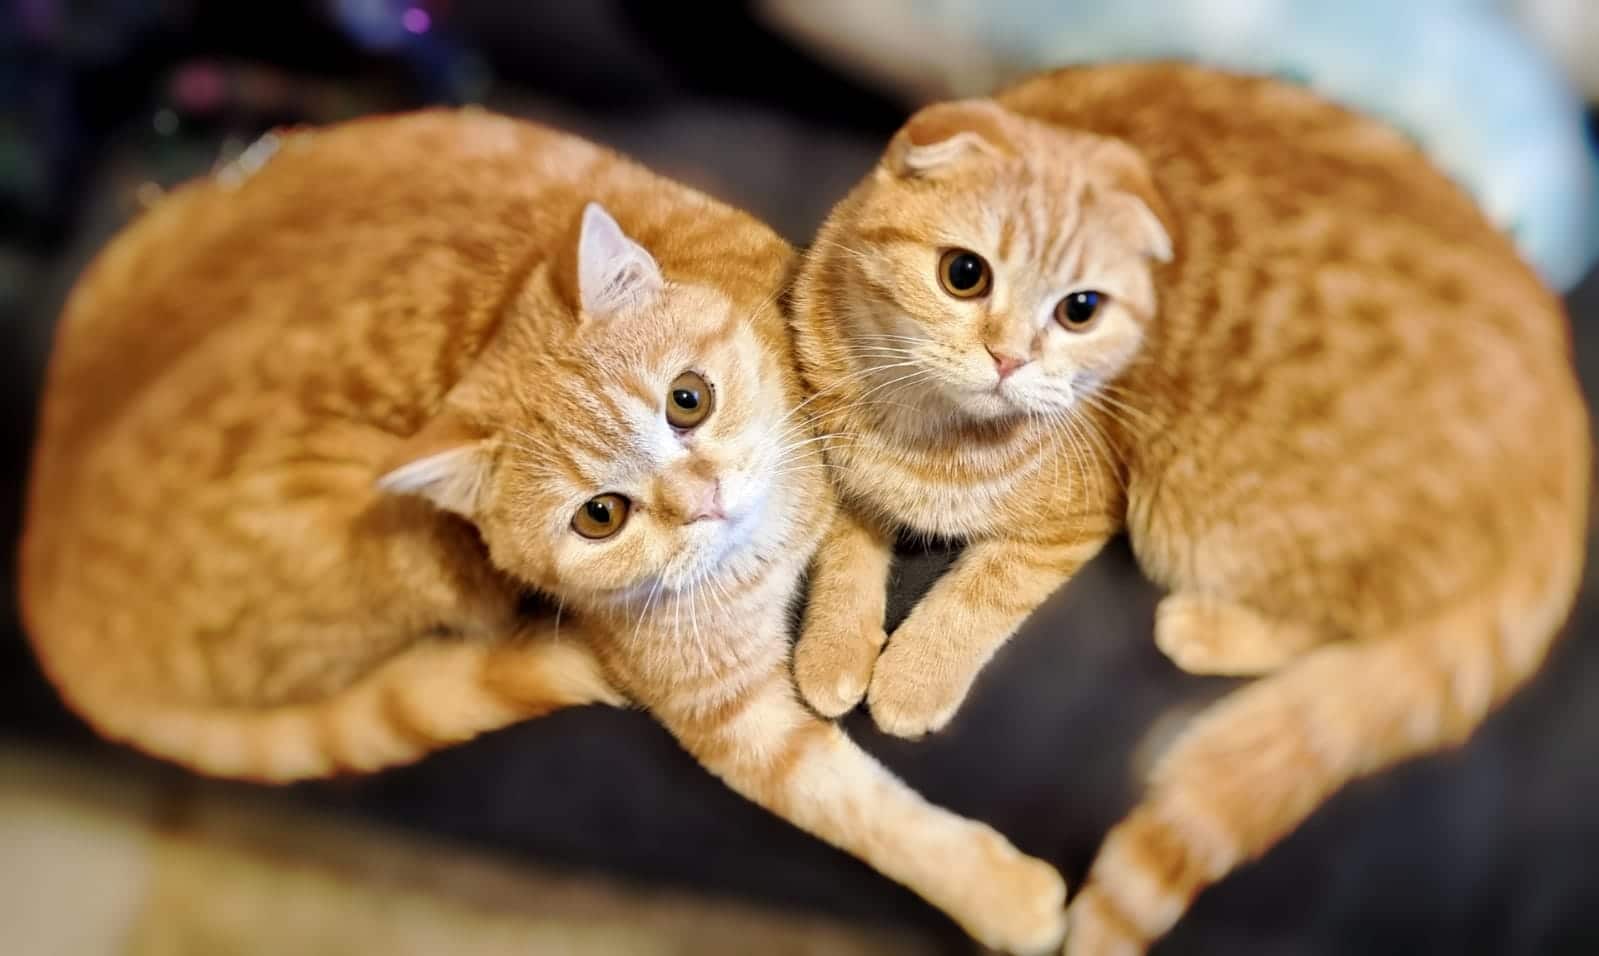 Celine de #Barcelona nos manda fotos de sus gatos  #scottish fold y scottish straight  🥰. Gracias por confiar en #Corralet y esperamos que sean muy felices como nuevos  miembros de tu 🏠 familia!